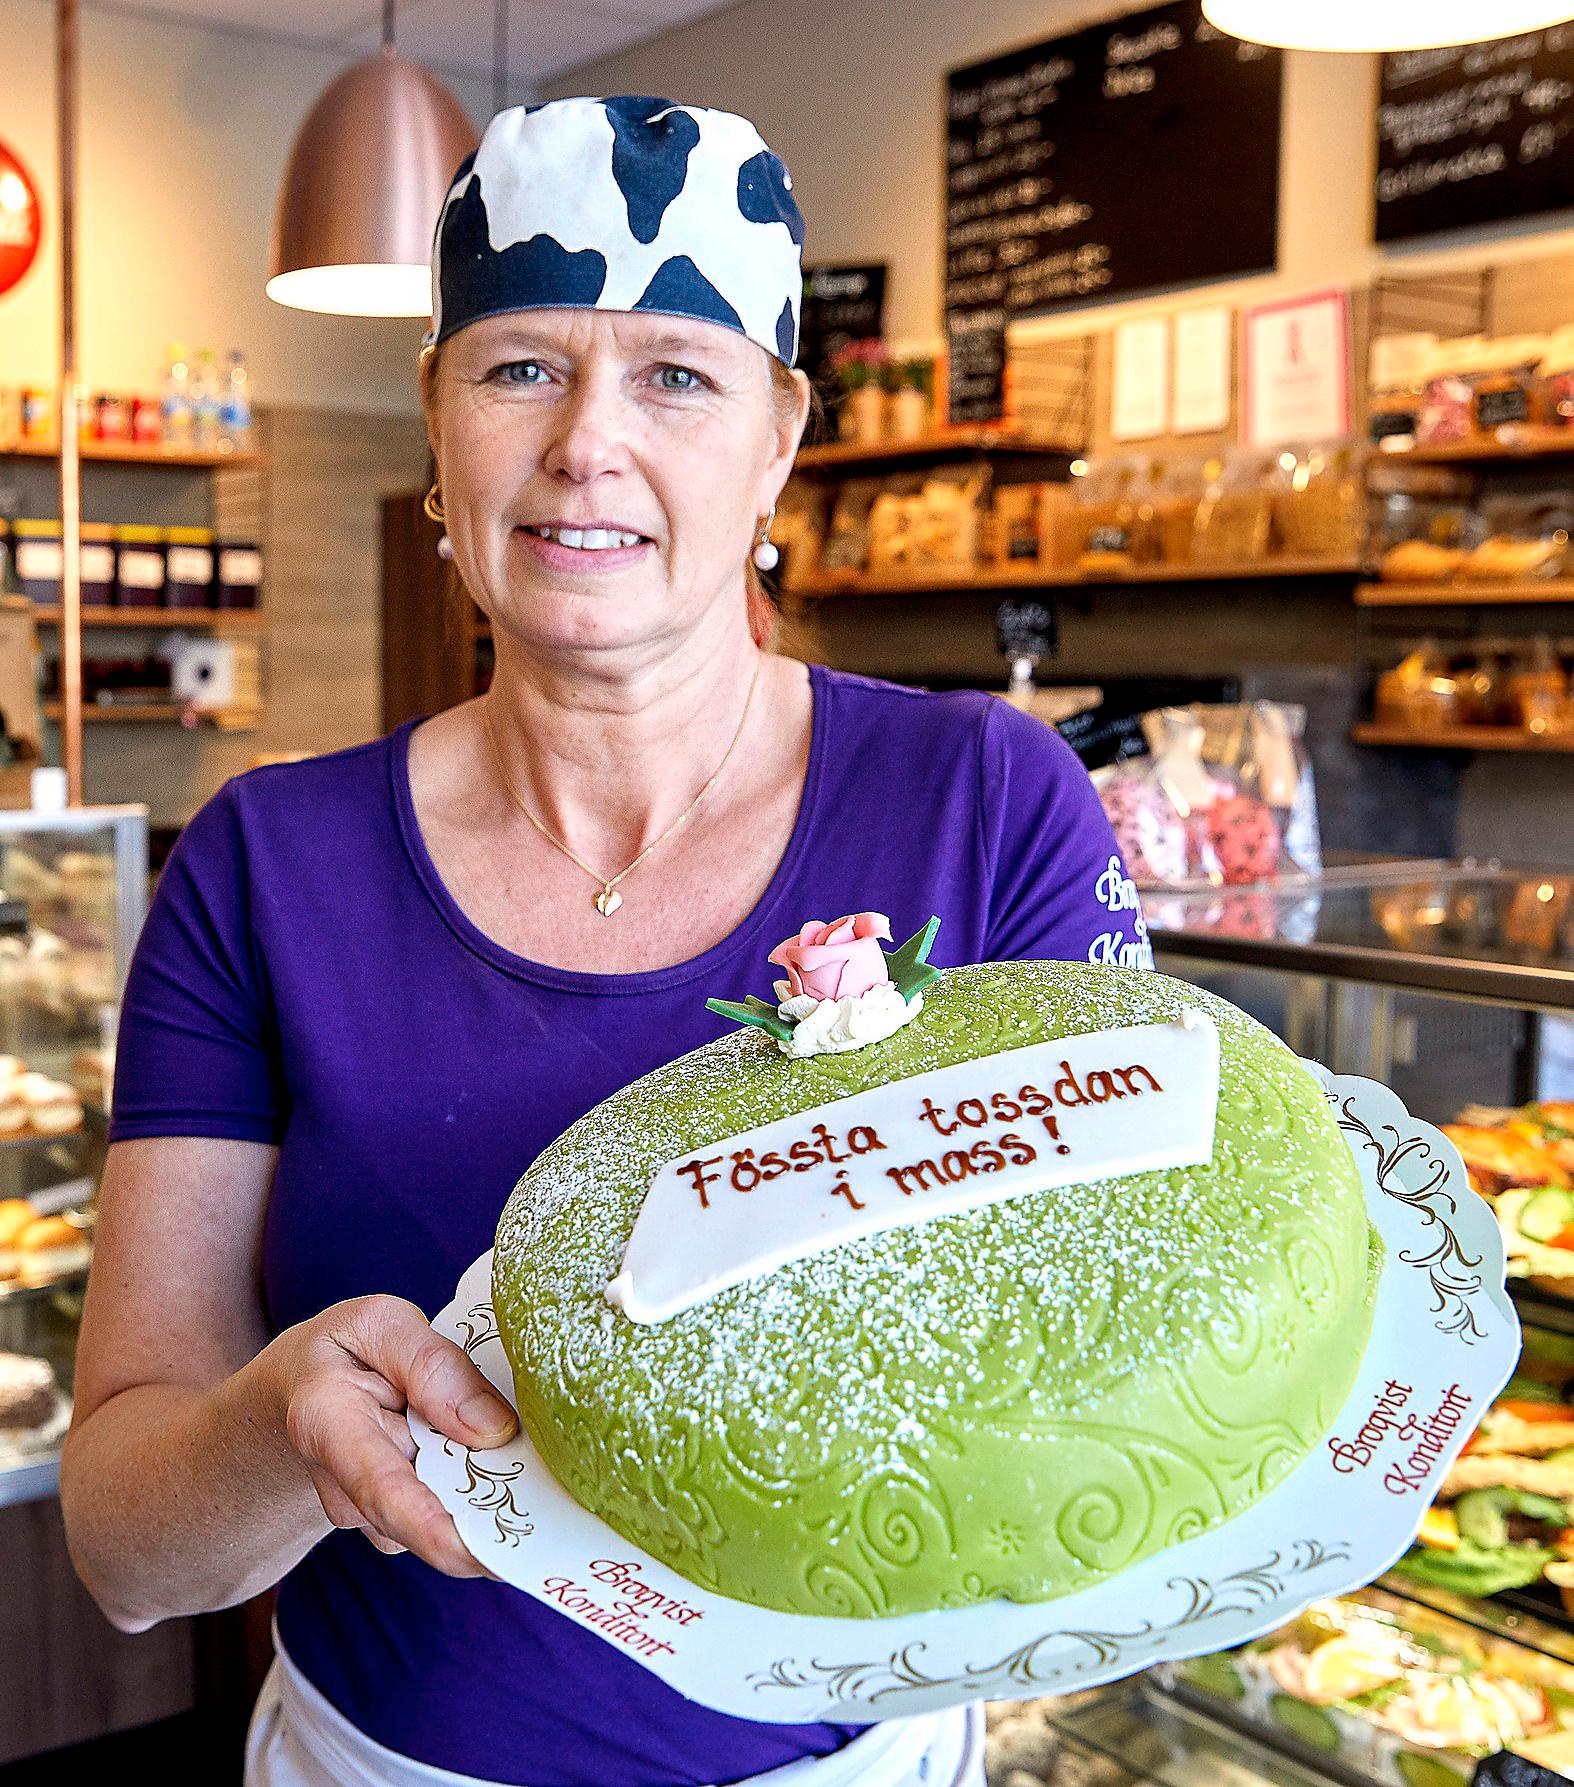  I dag är det smålänningarnas egen ”nationaldag” där det snarare är den småländska dialekten som hyllas. Och självklart firas ”fössta tossdan i mass” med en tårta med ”massipan”. På bild Ingela  Broquist, konditor i Växjö.